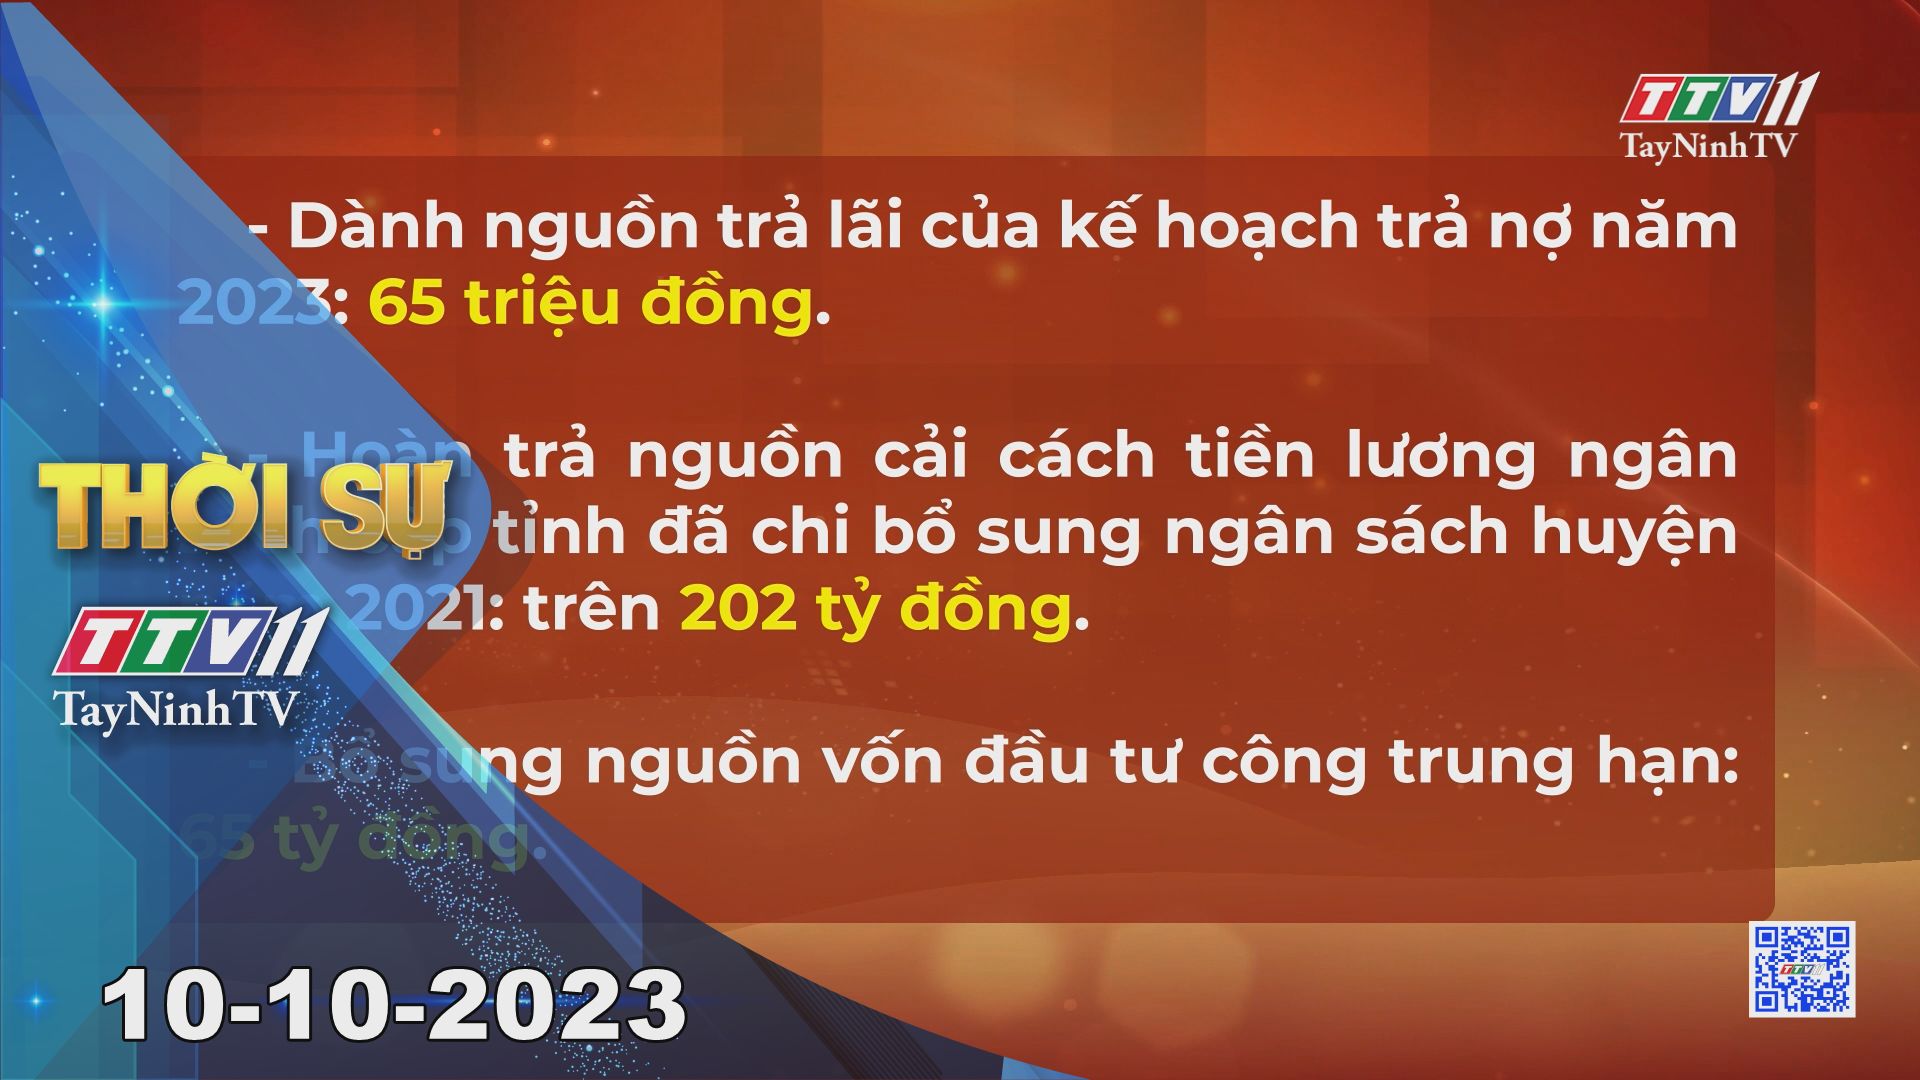 Thời sự Tây Ninh 10-10-2023 | Tin tức hôm nay | TayNinhTV